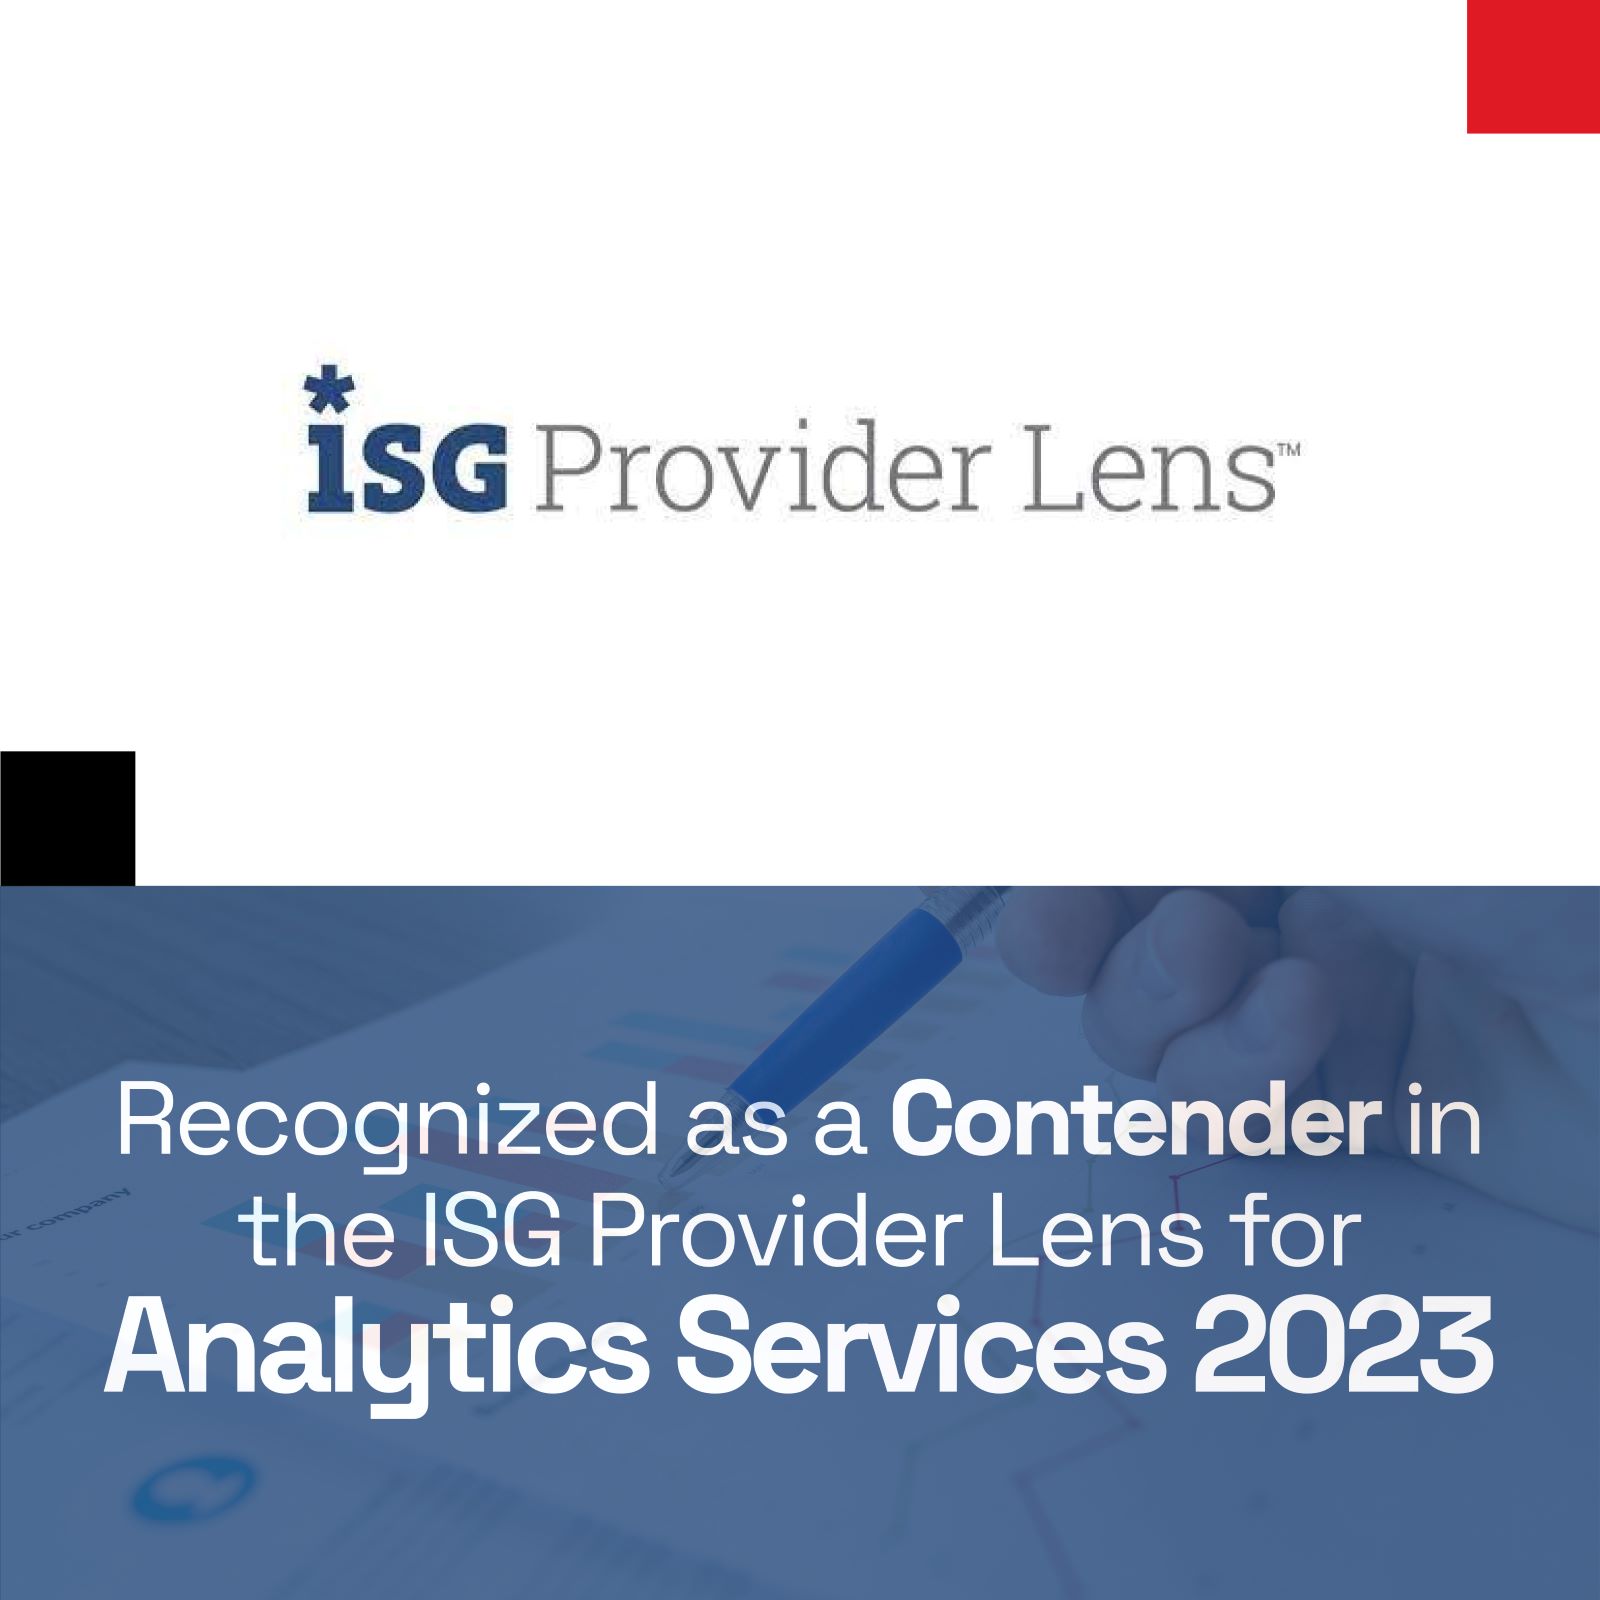 ISG Provider Lens logo